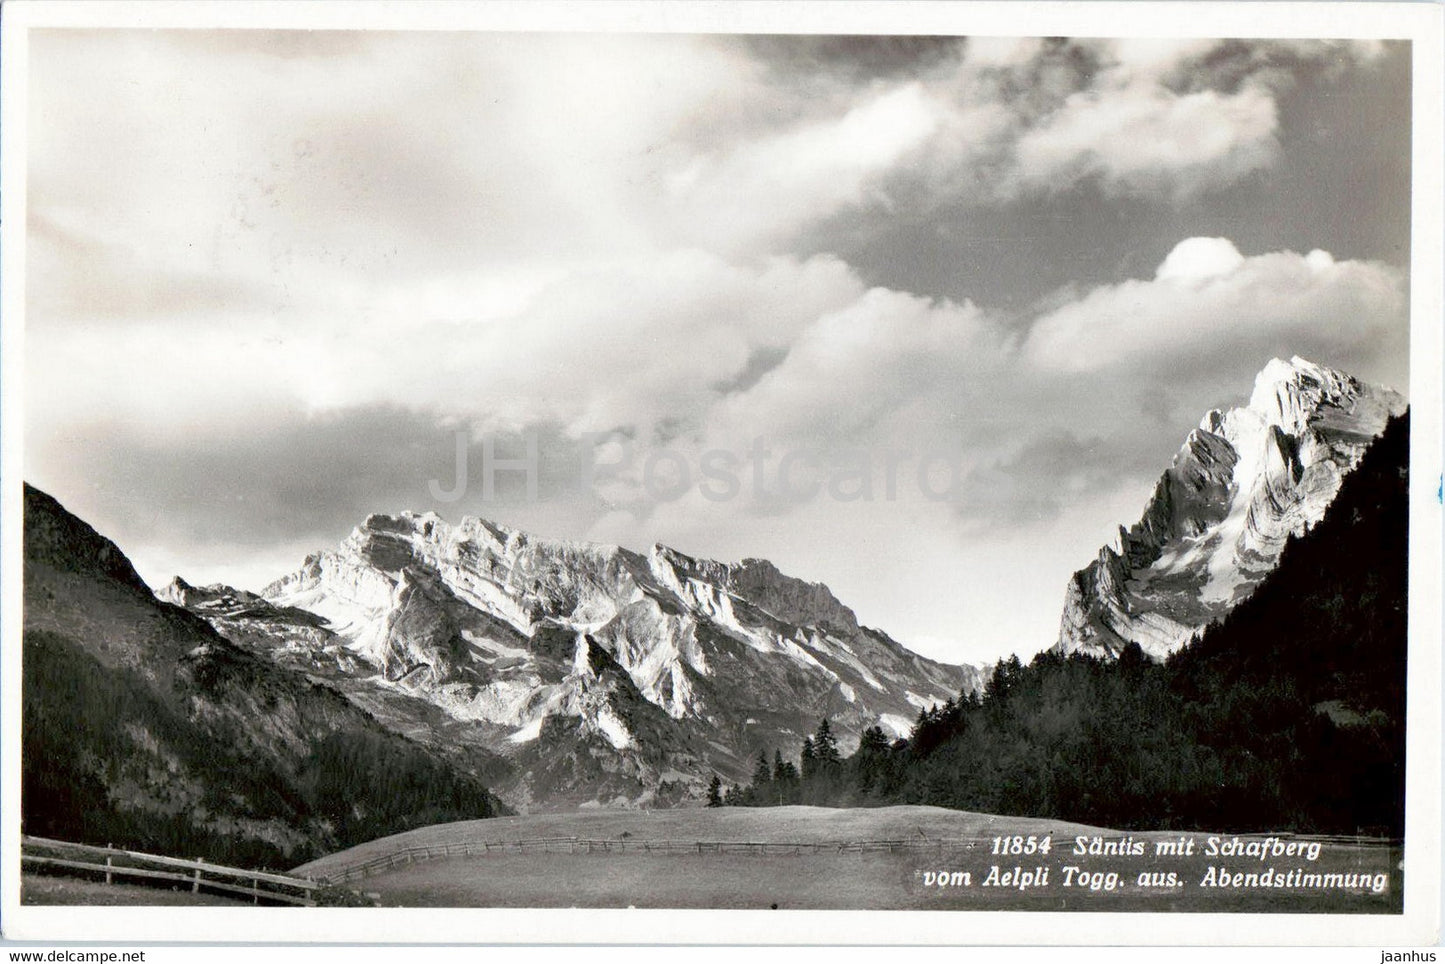 Santis mit Schafberg vom Aelpli Togg aus Abendstimmung - 11854 - 1948 - old postcard - Switzerland - used - JH Postcards